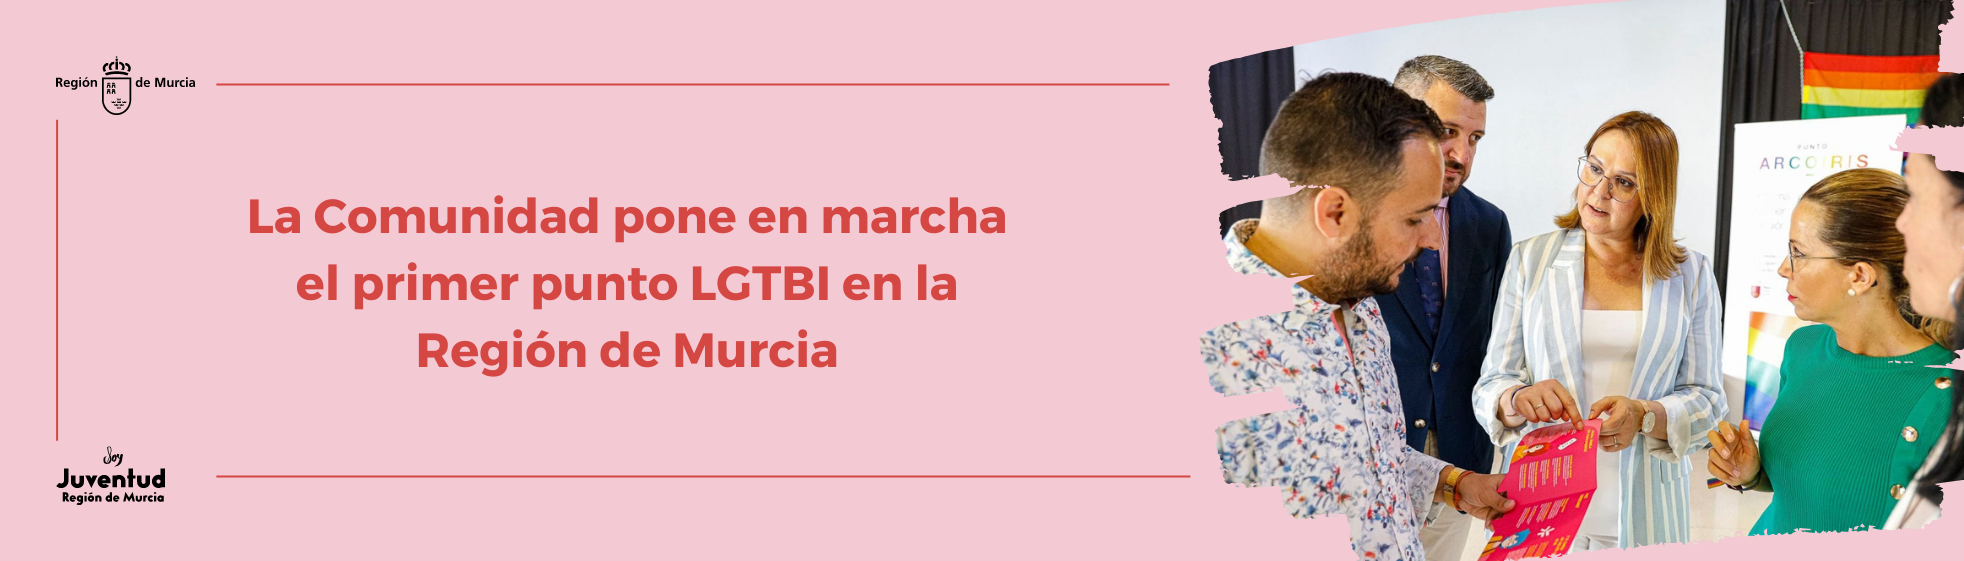 La Comunidad pone en marcha el primer punto LGTBI en la Región de Murcia